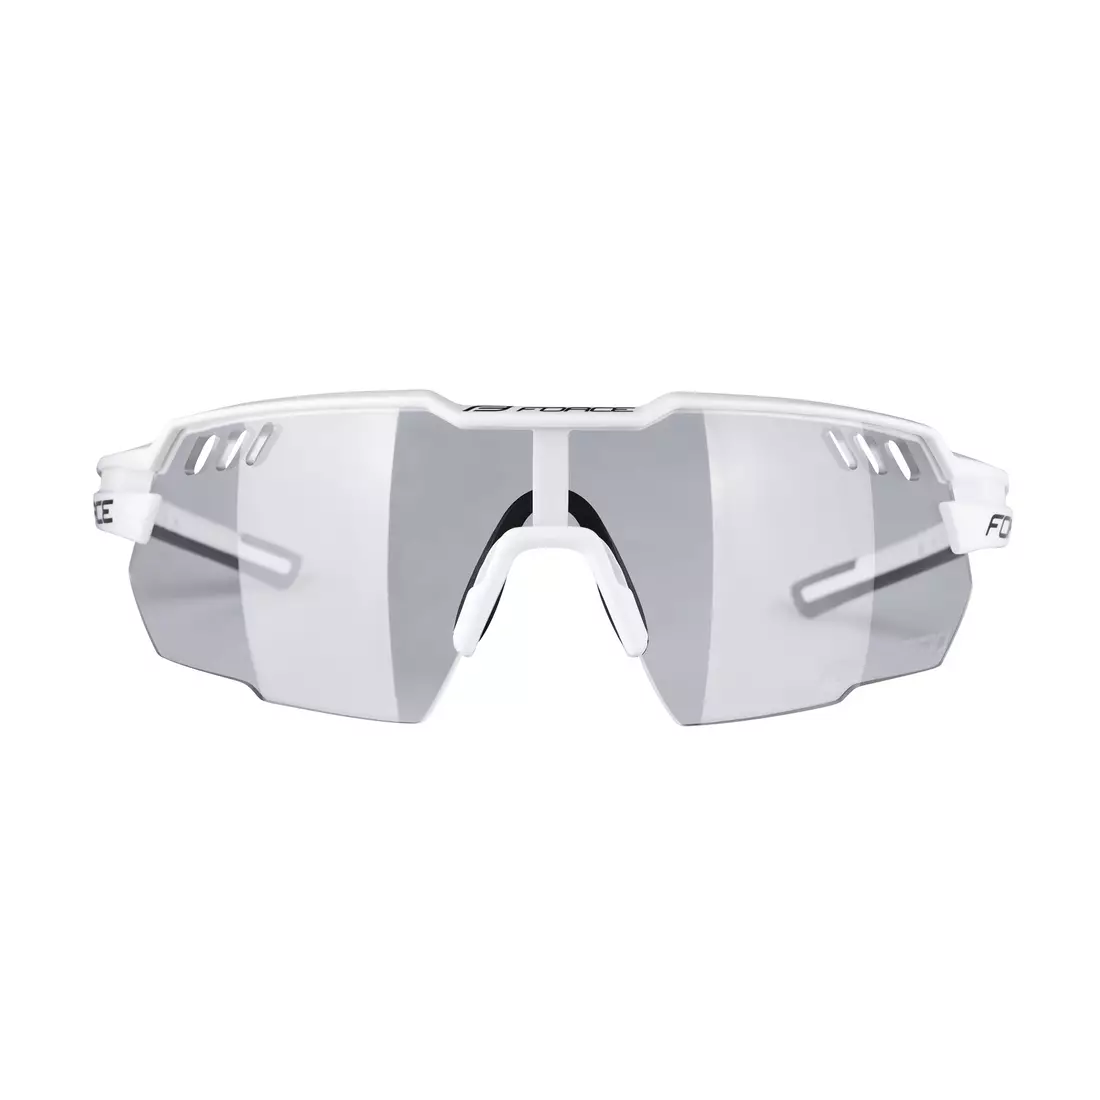 FORCE sportbrille AMOLEDO, weiße photochrome Gläser 910872